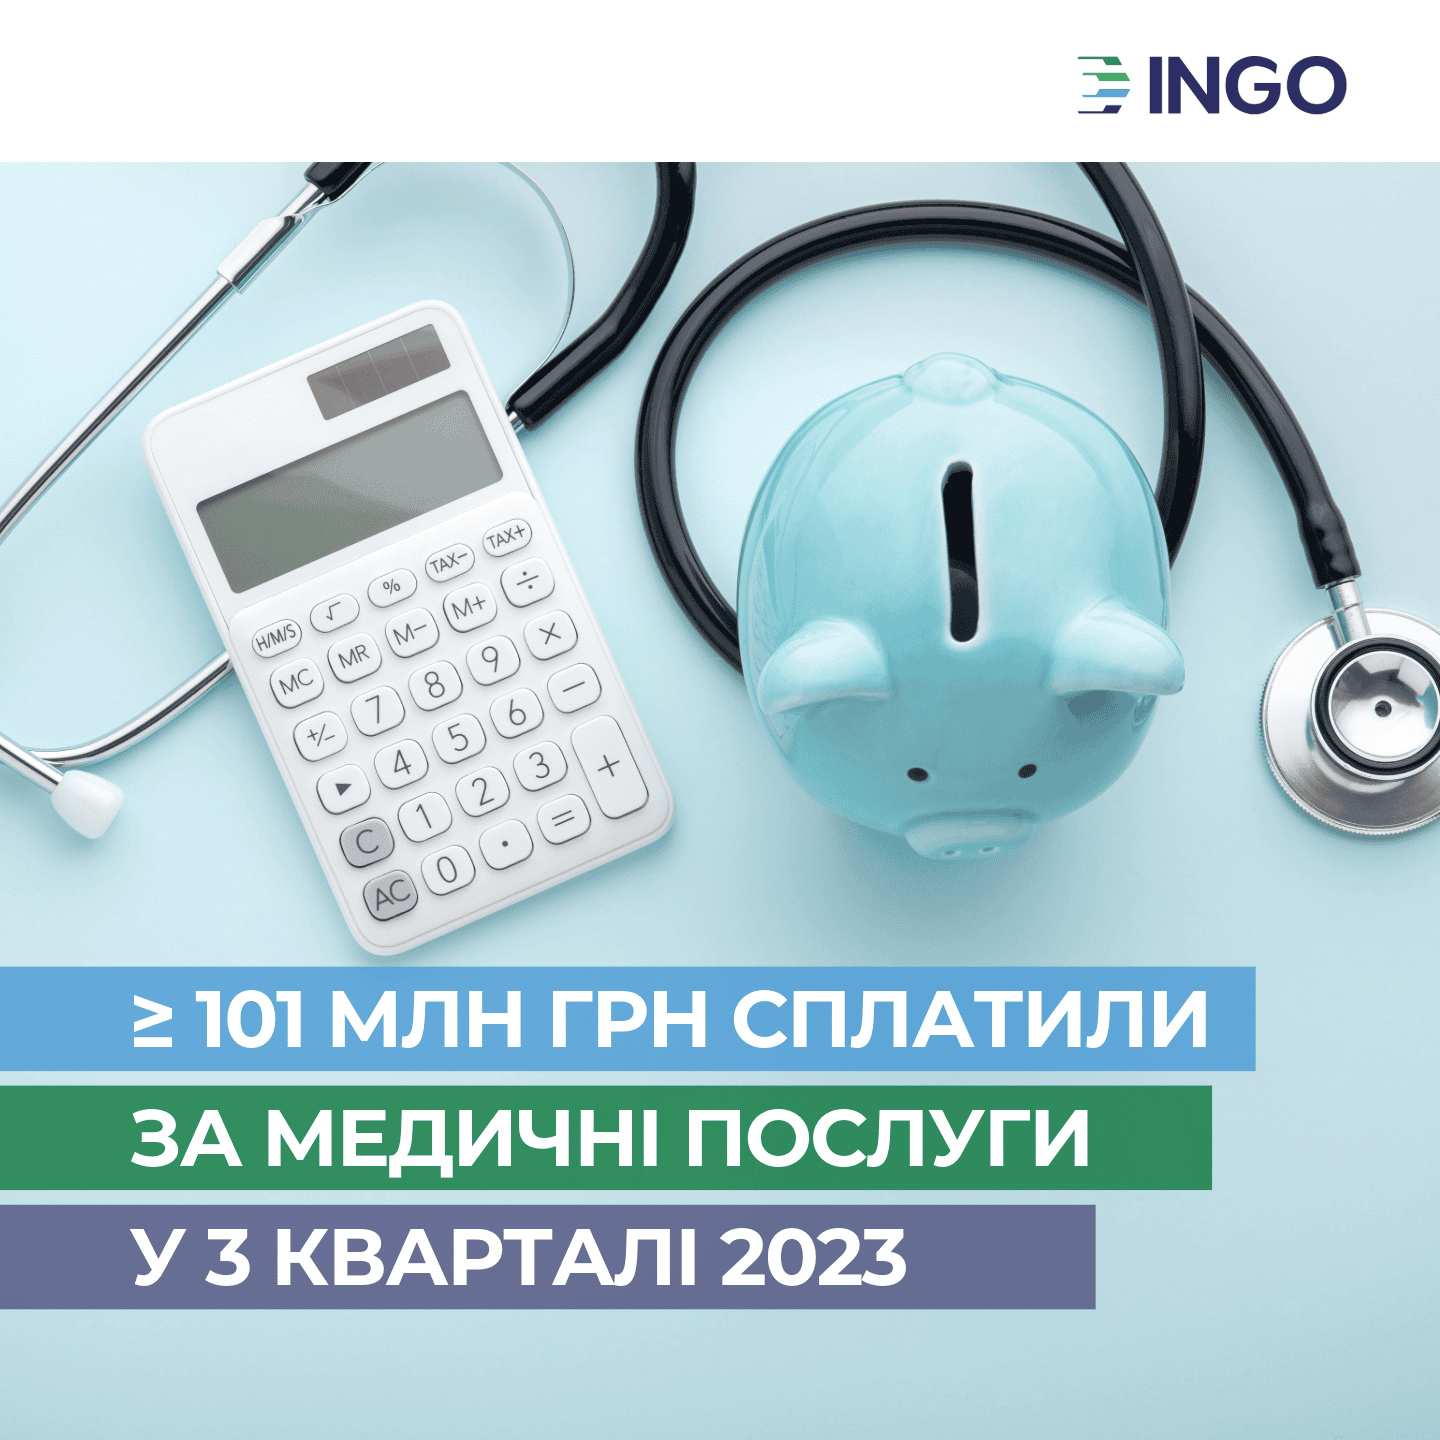 Понад 101 млн грн сплатила «ІНГО» за медичні послуги застрахованих у 3-му кварталі 2023 року